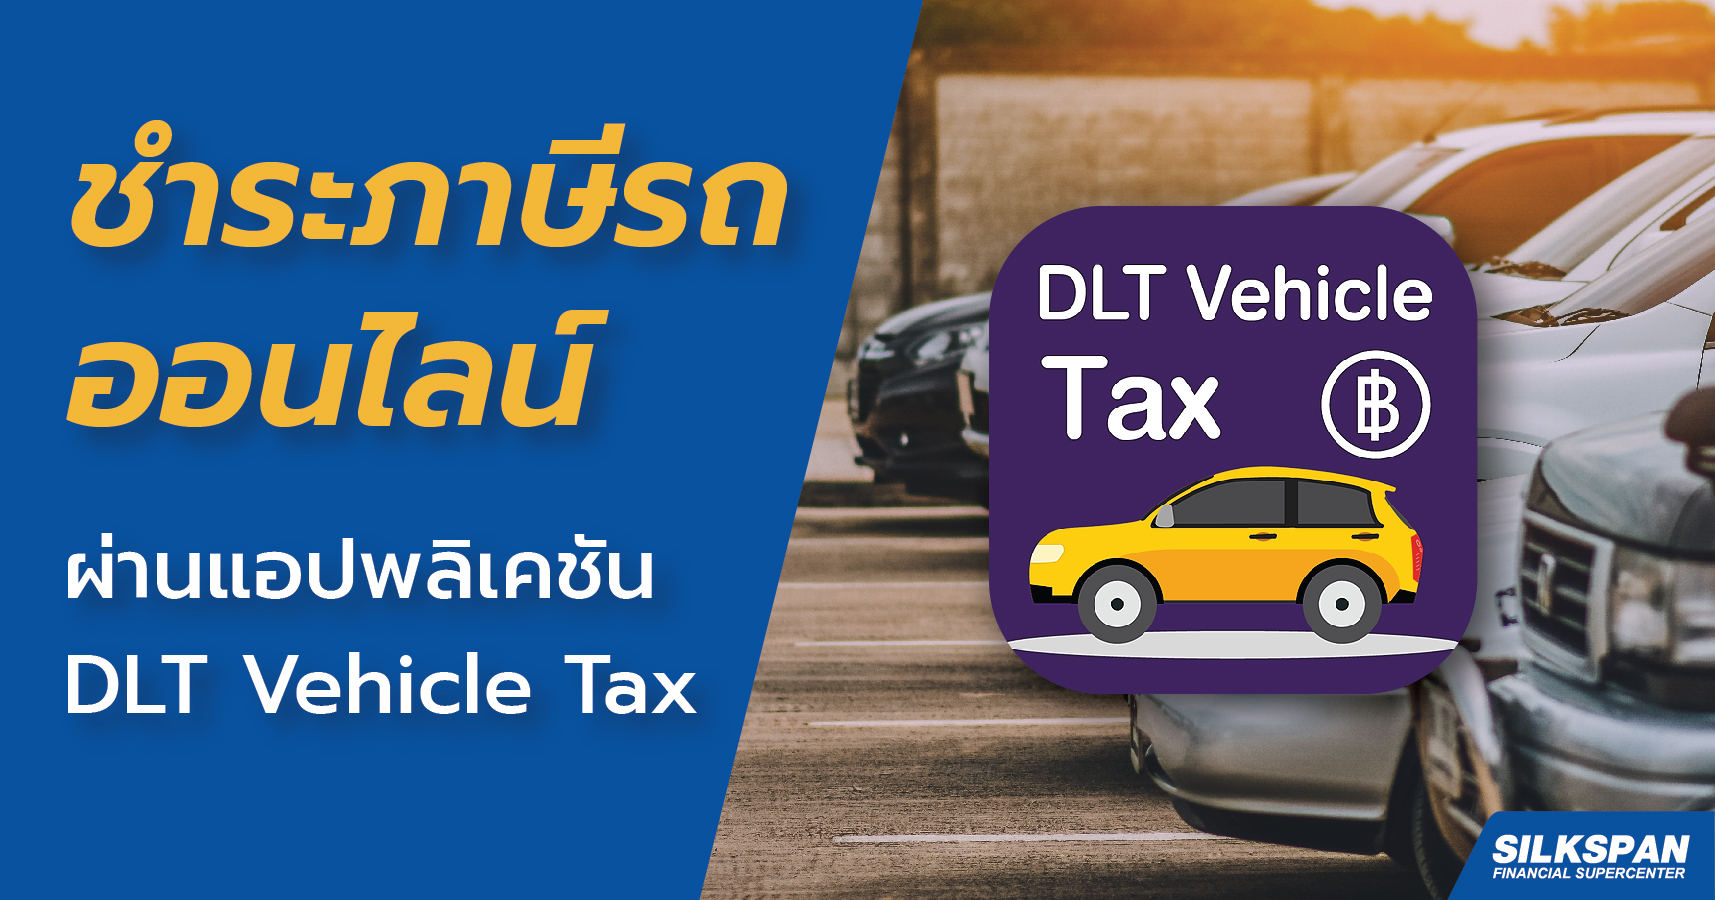 ชำระภาษีออนไลน์ผ่านแอปพลิเคชัน DLT Vehicle Tax